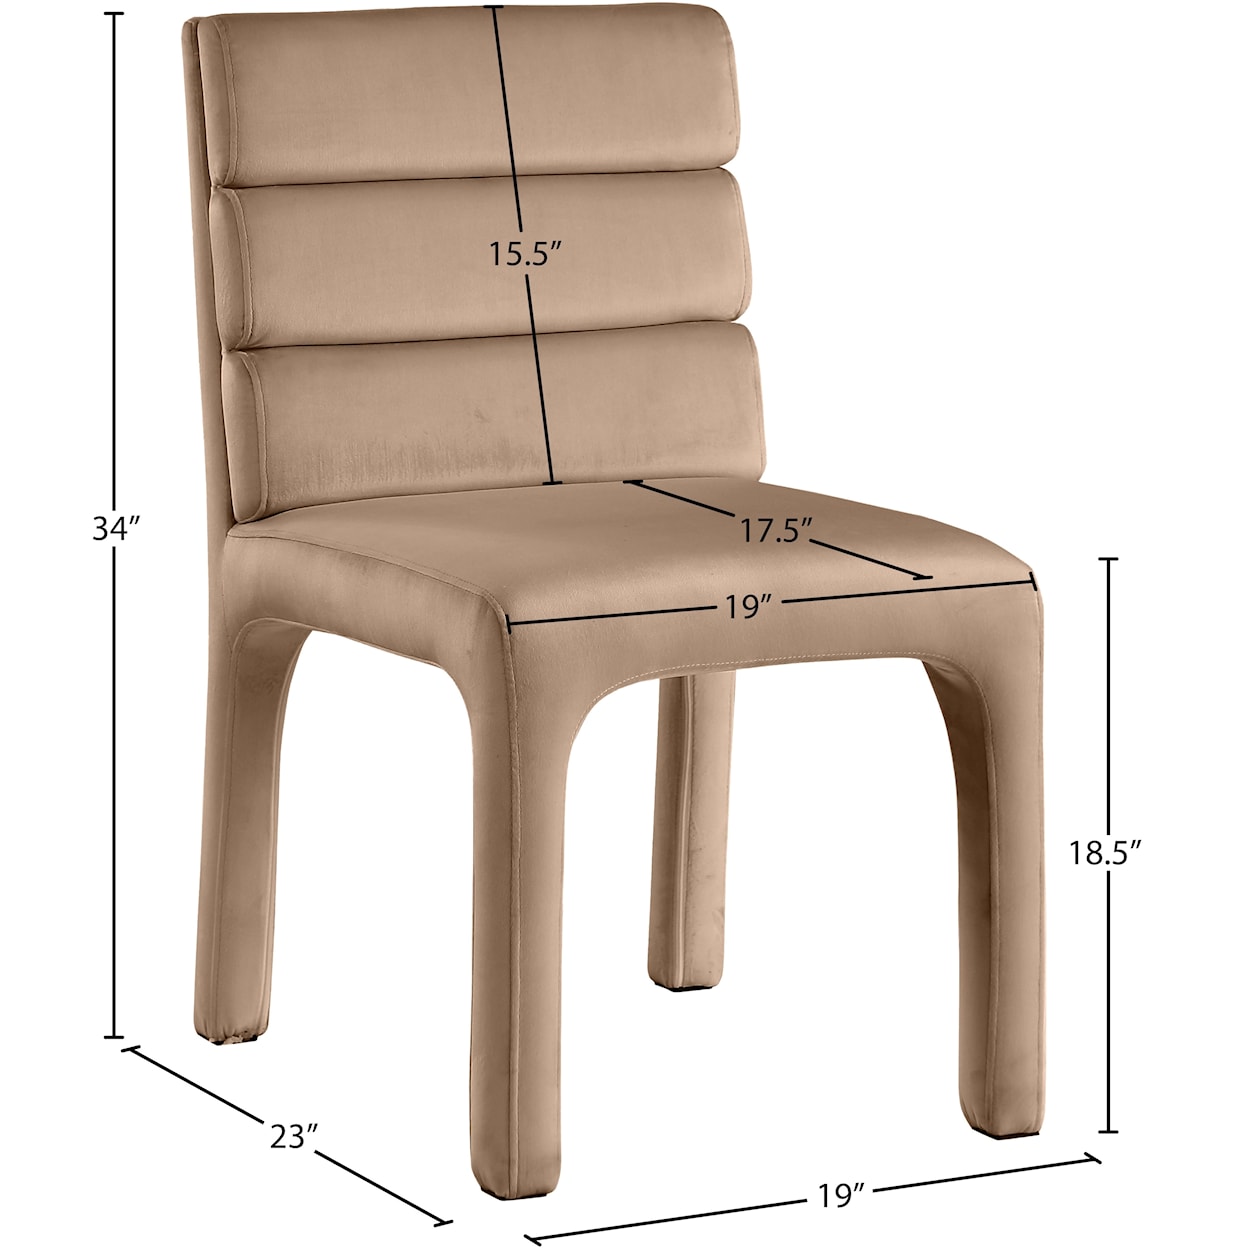 Meridian Furniture Kai Dining Chair